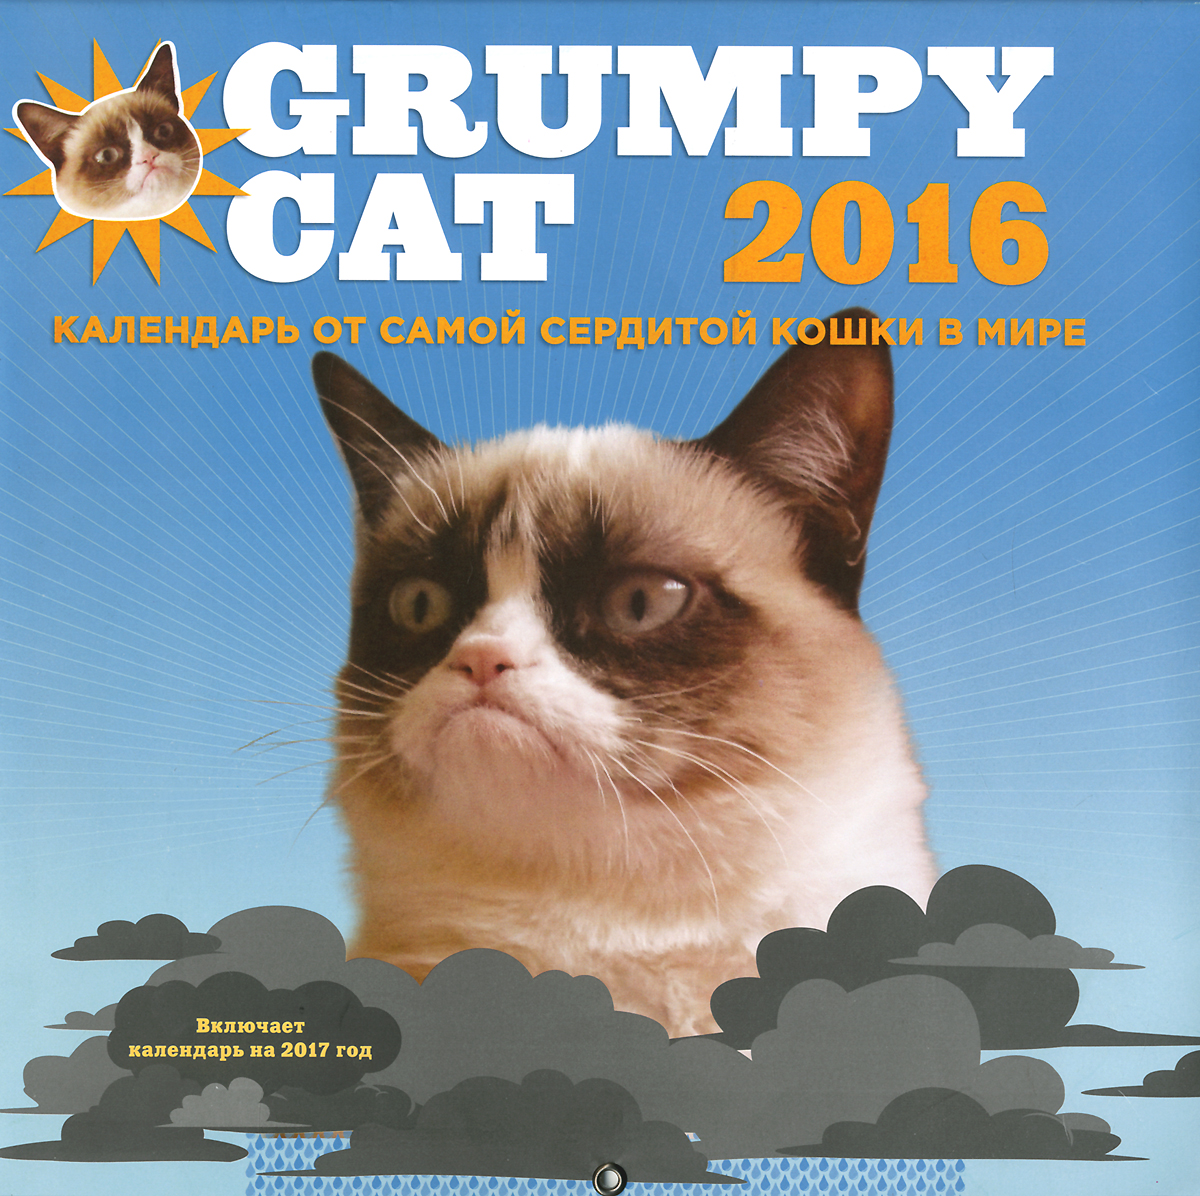 Календарь 2016 (на скрепке). Grumpy Cat 2016. Календарь от самой сердитой кошки в мире